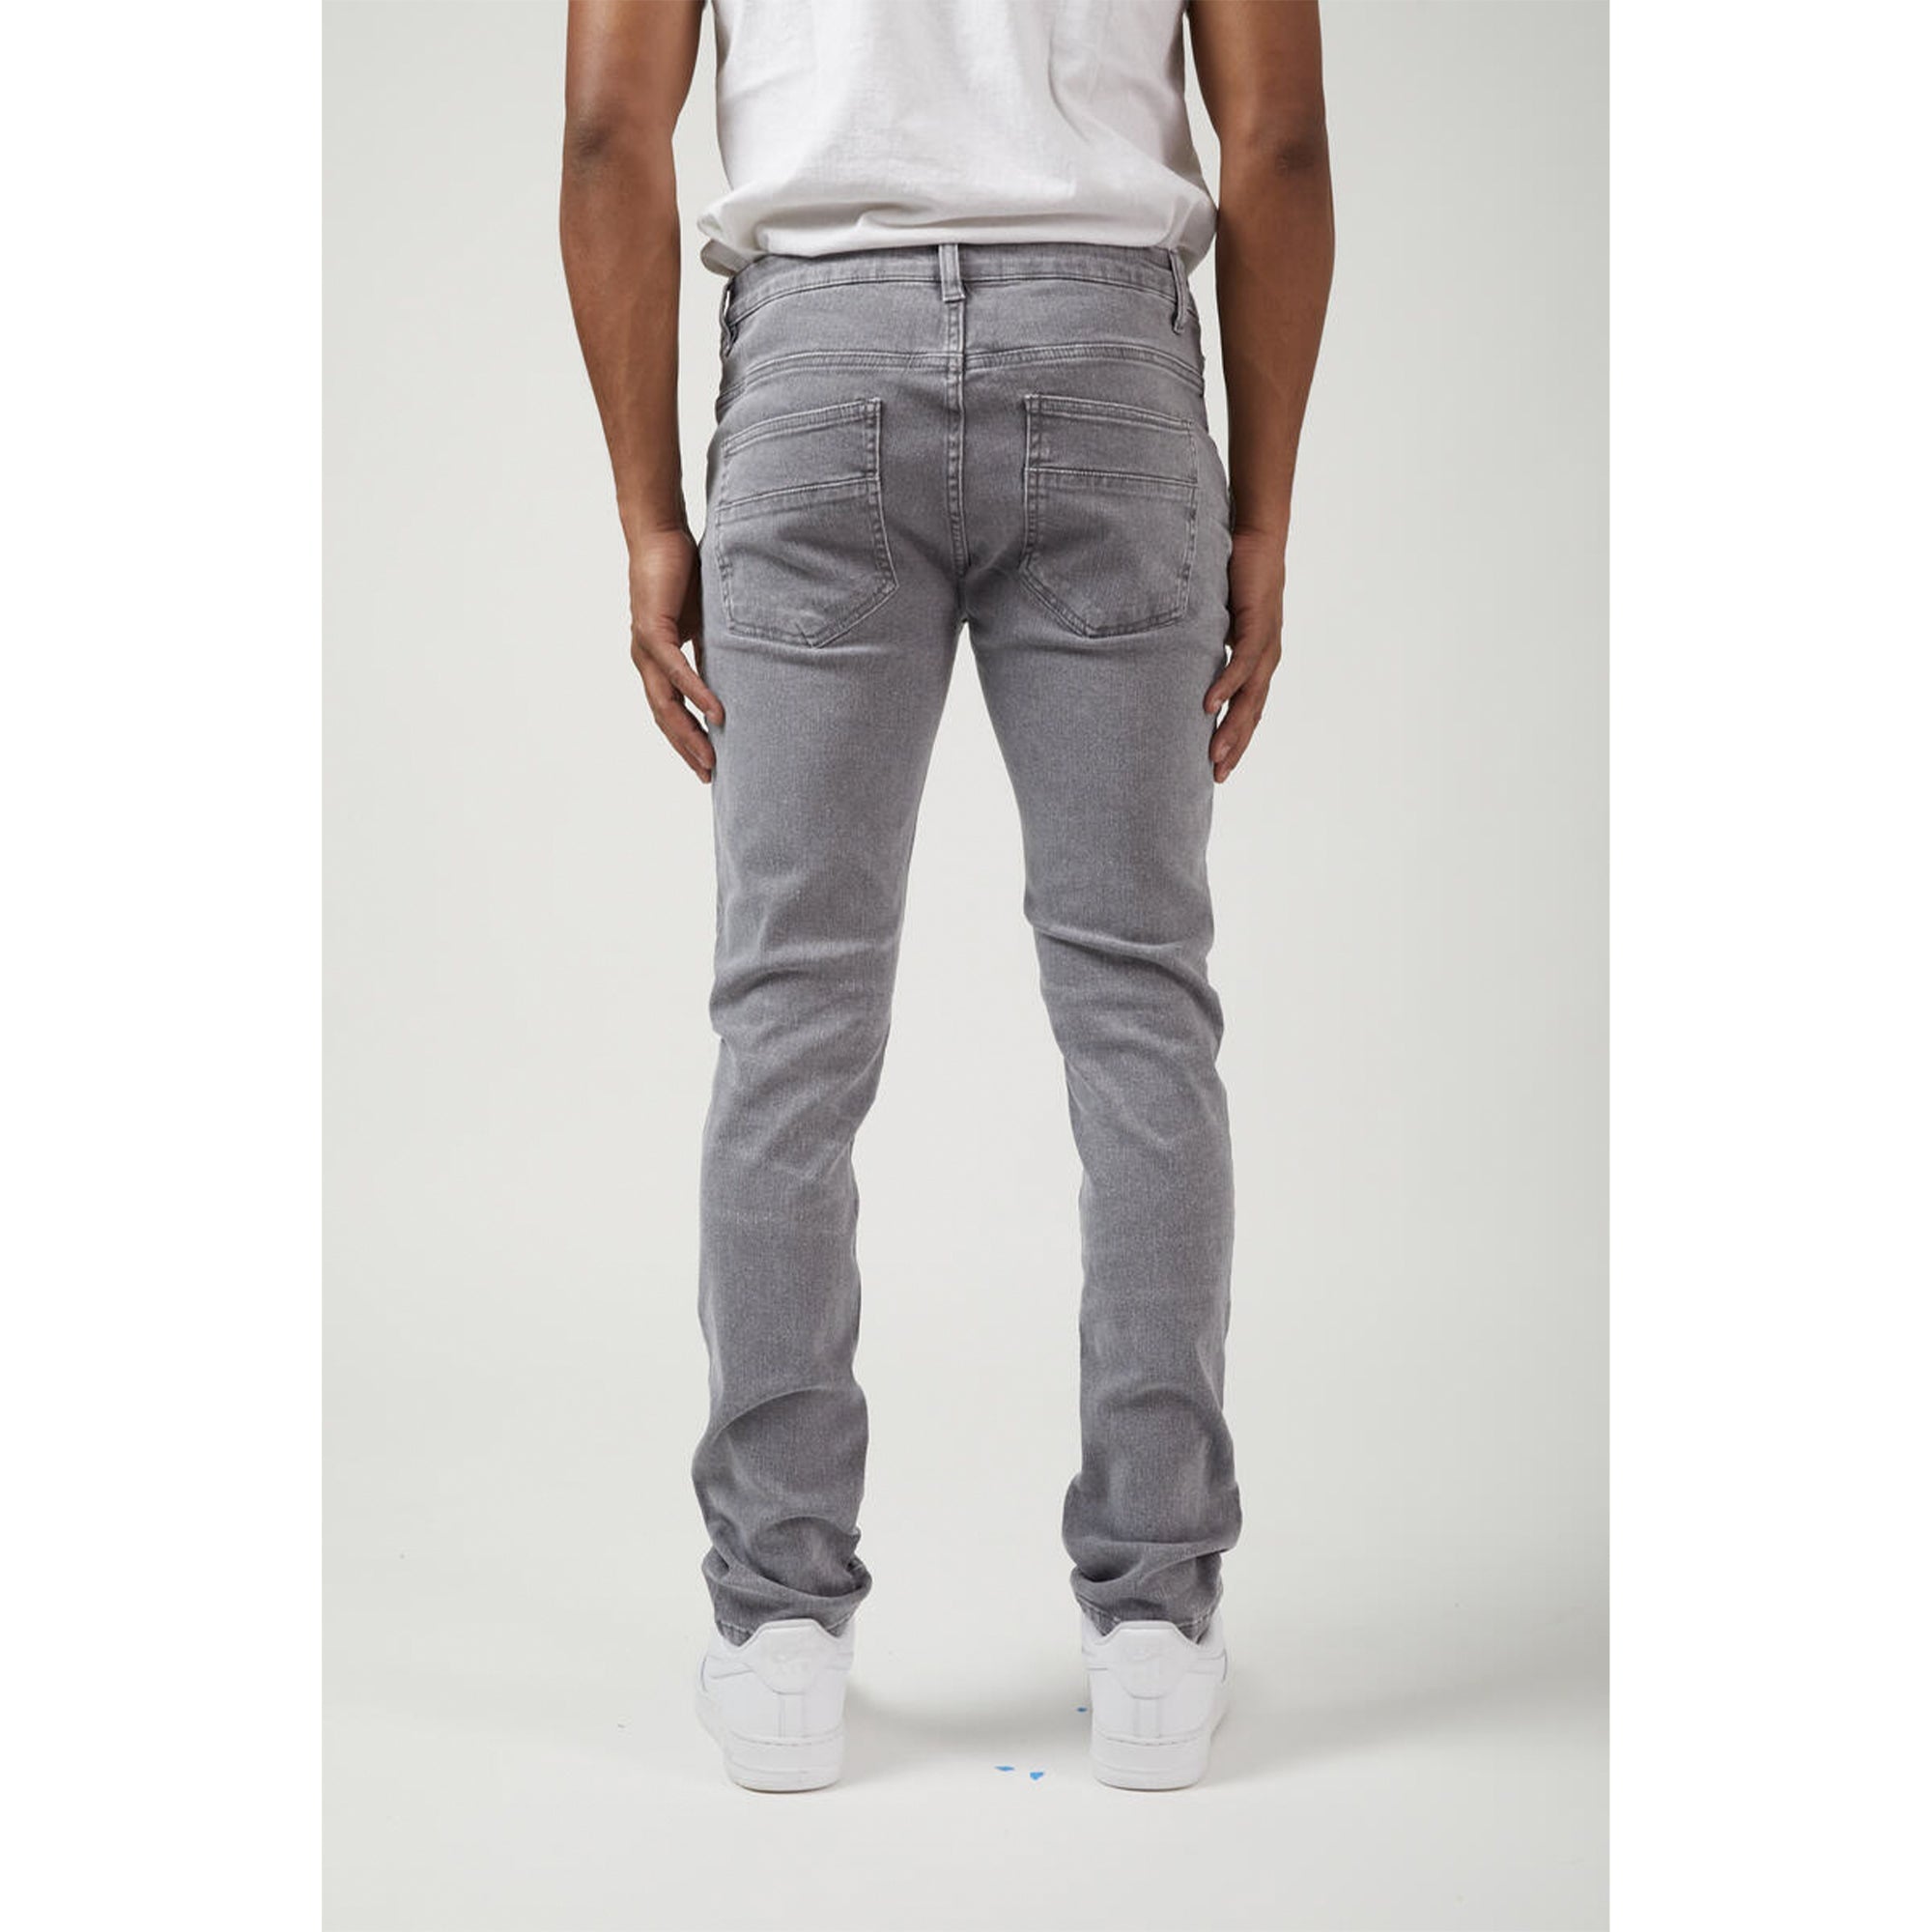 M. Society Men Skinny Fit Denim Jeans(Gray)-Nexus Clothing